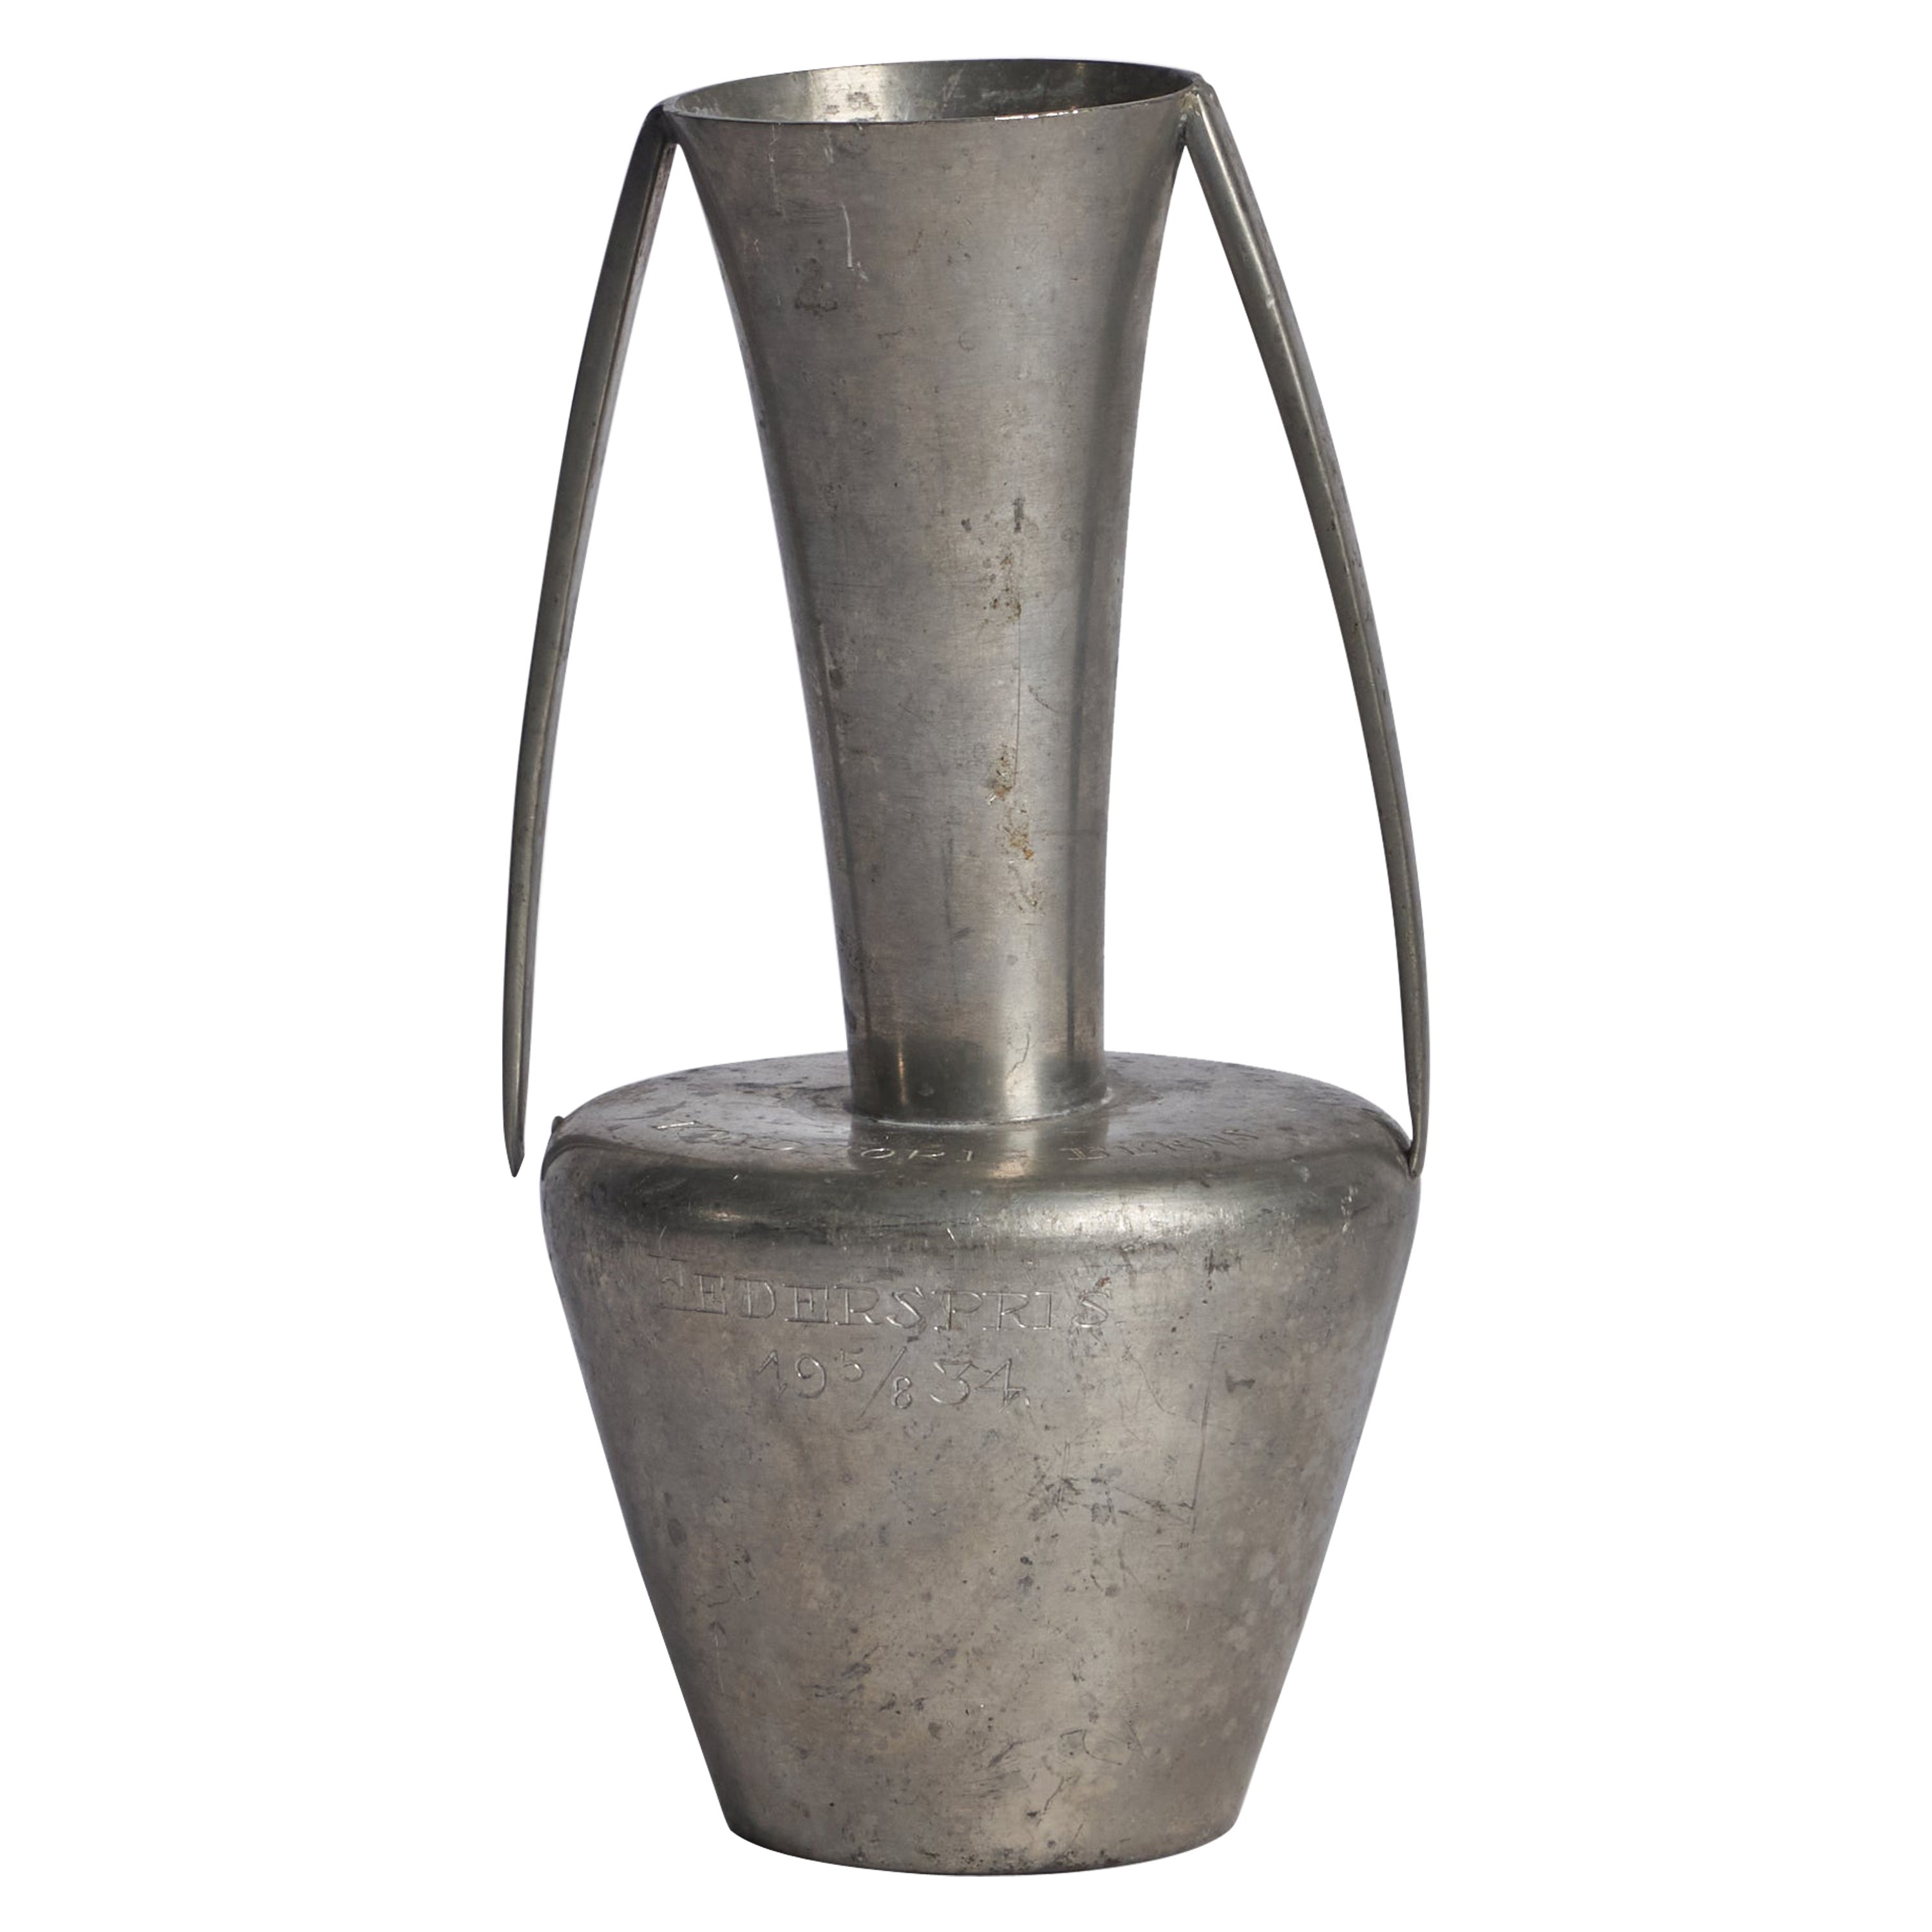 GAB, Vase, Pewter, Sweden, 1934